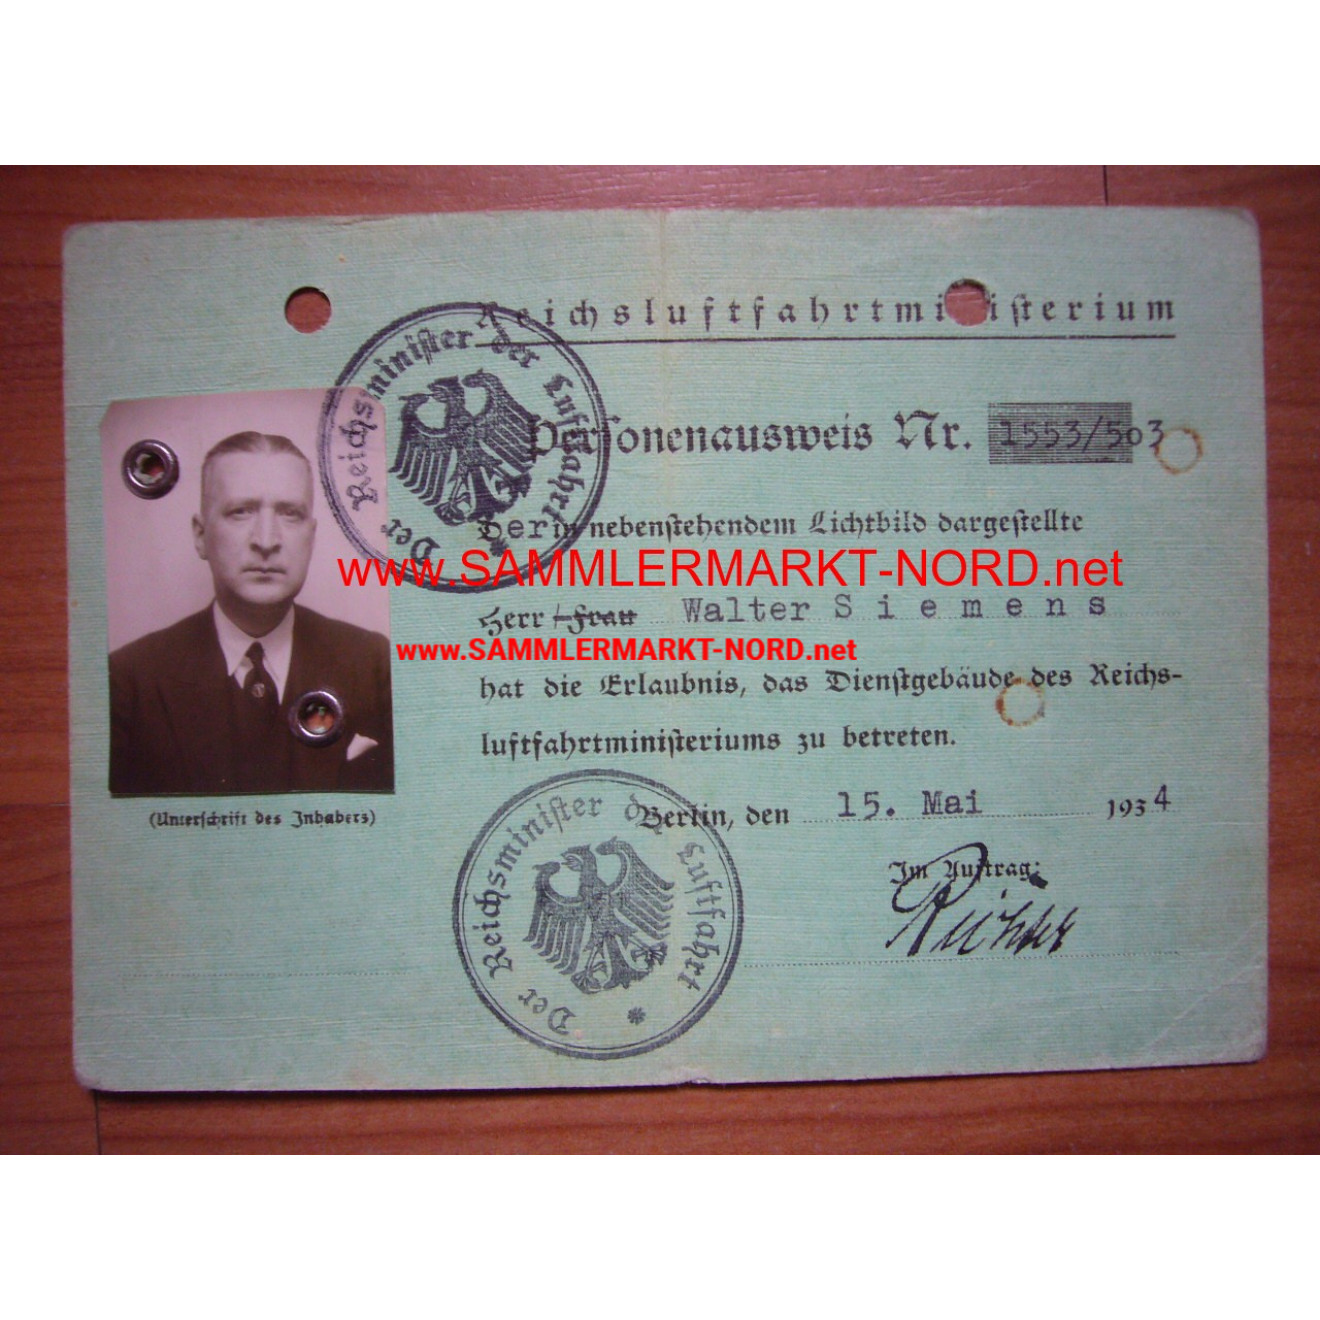 Reichsluftfahrministerium - Personalausweis Oberst Walter Siemen